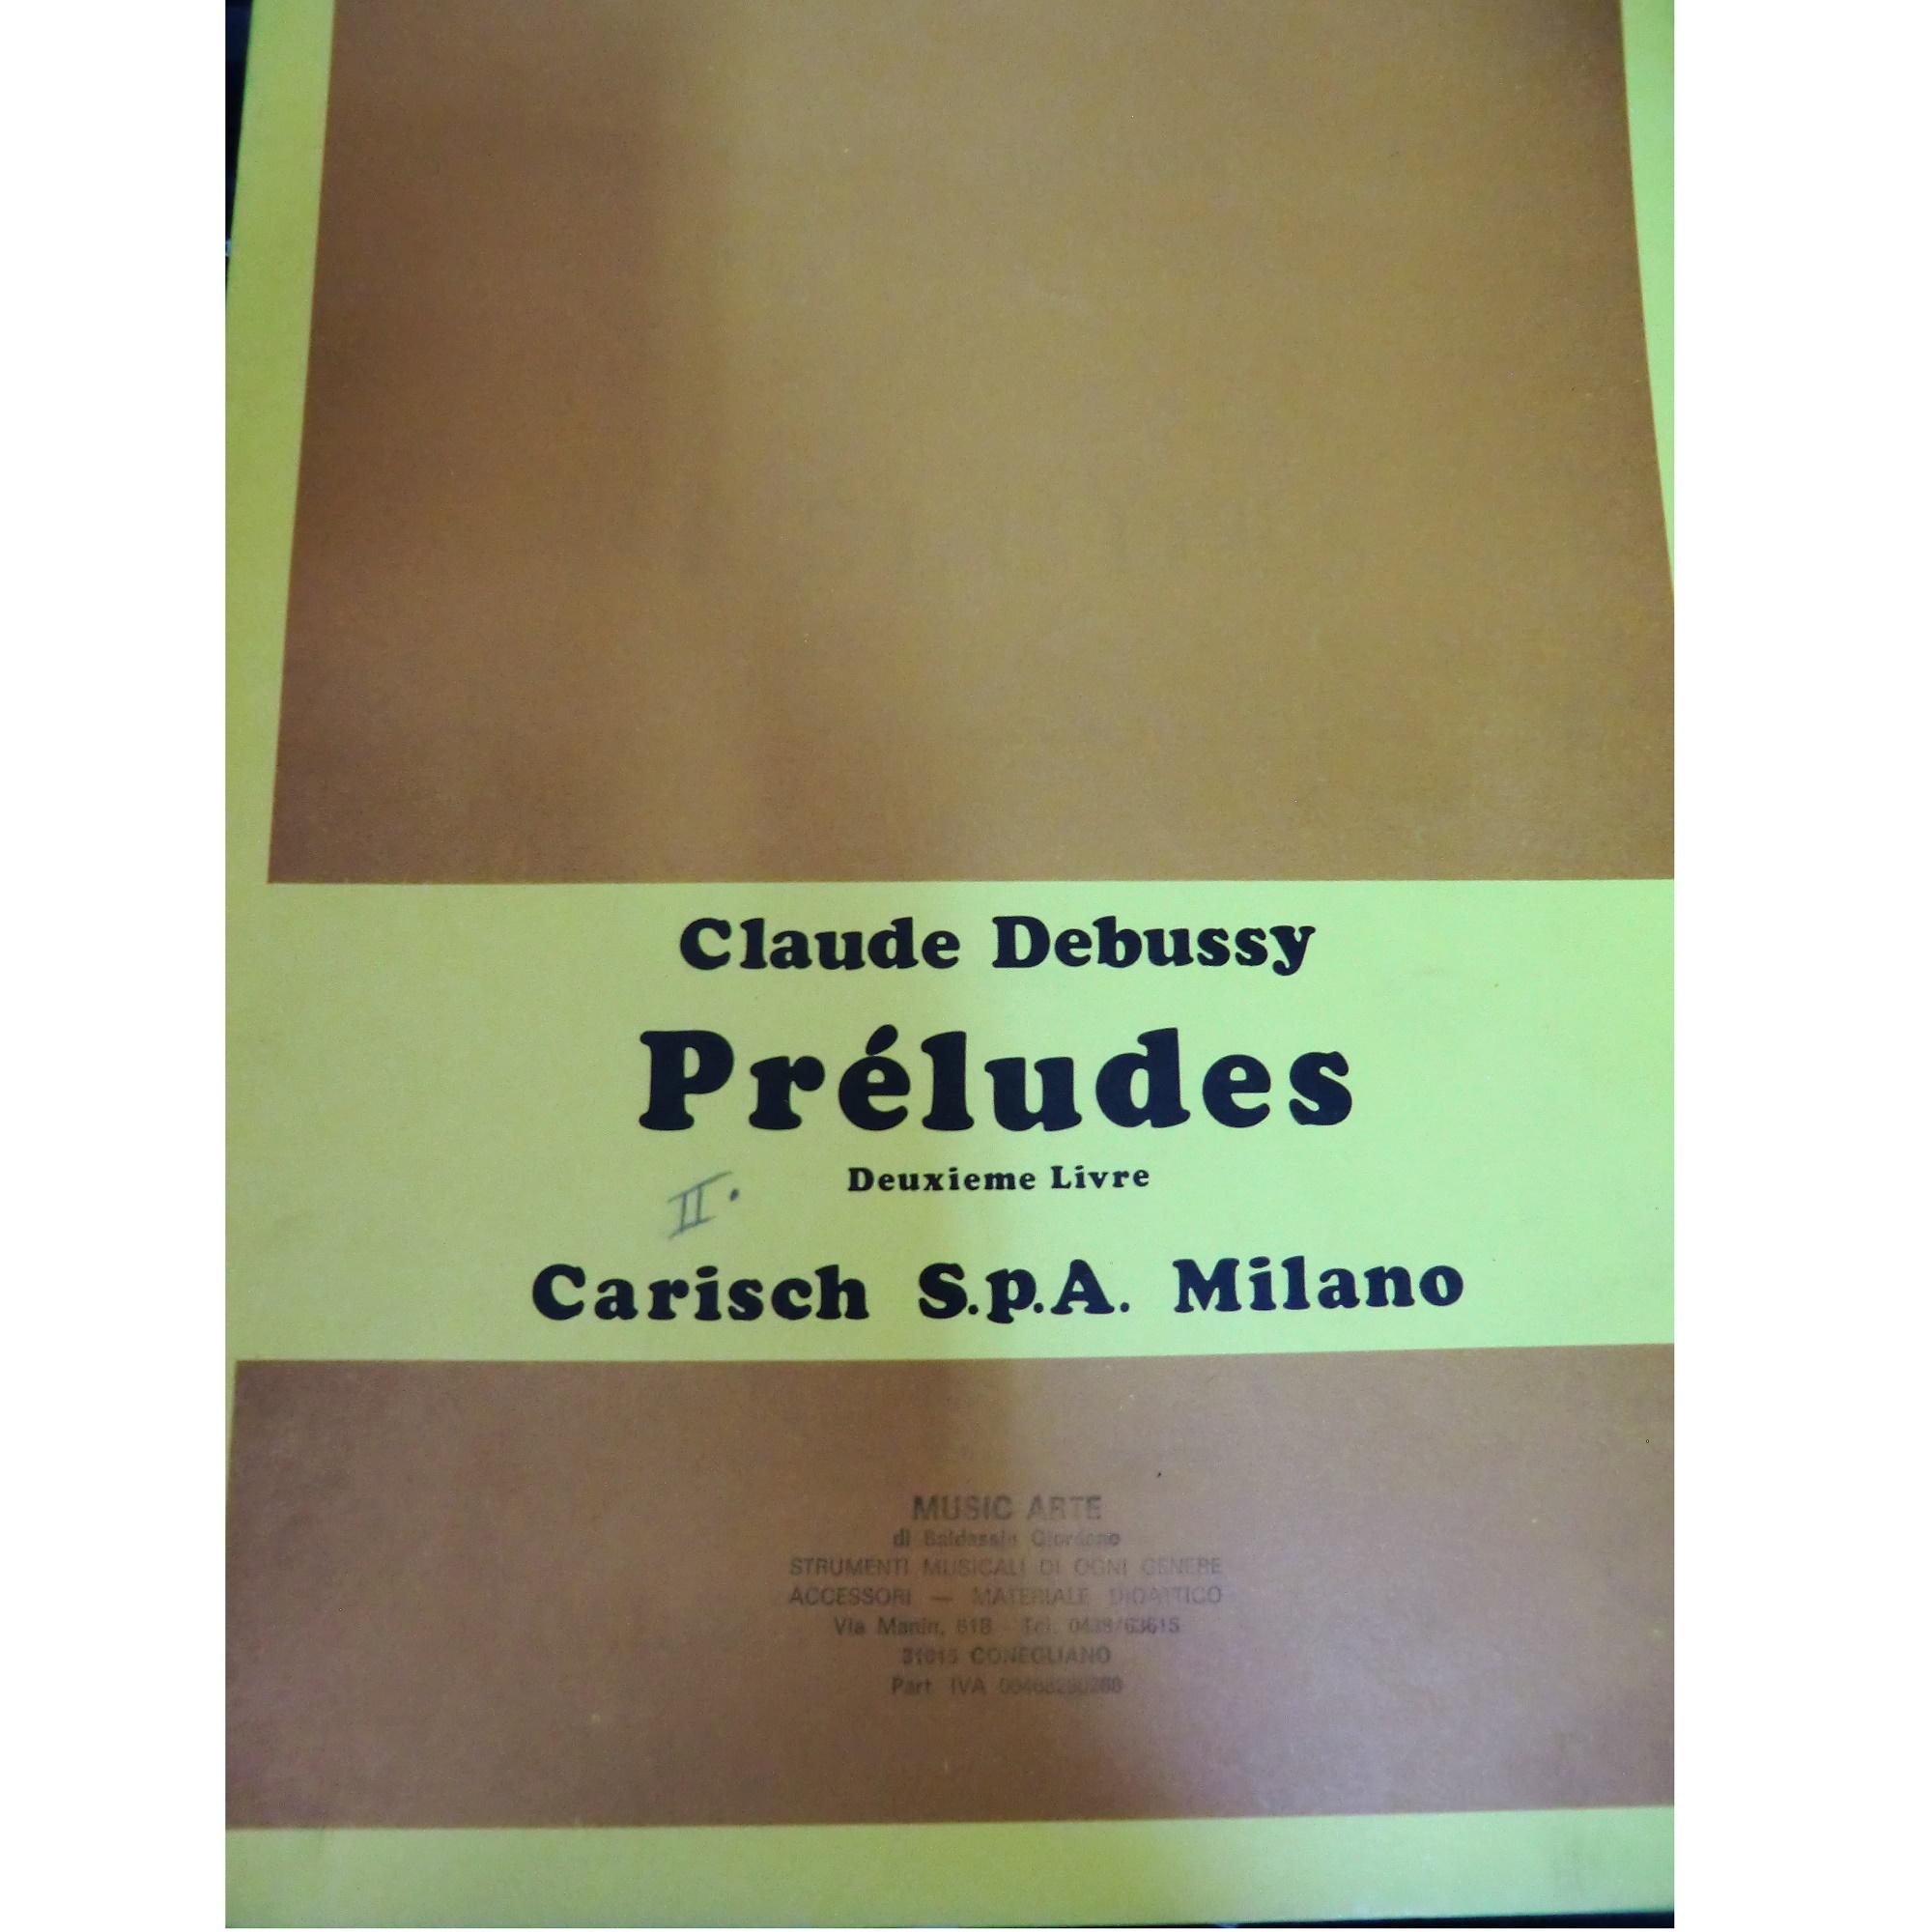 Debussy PrÃ©ludes Deuxieme Livre - Carisch S.p.a Milano